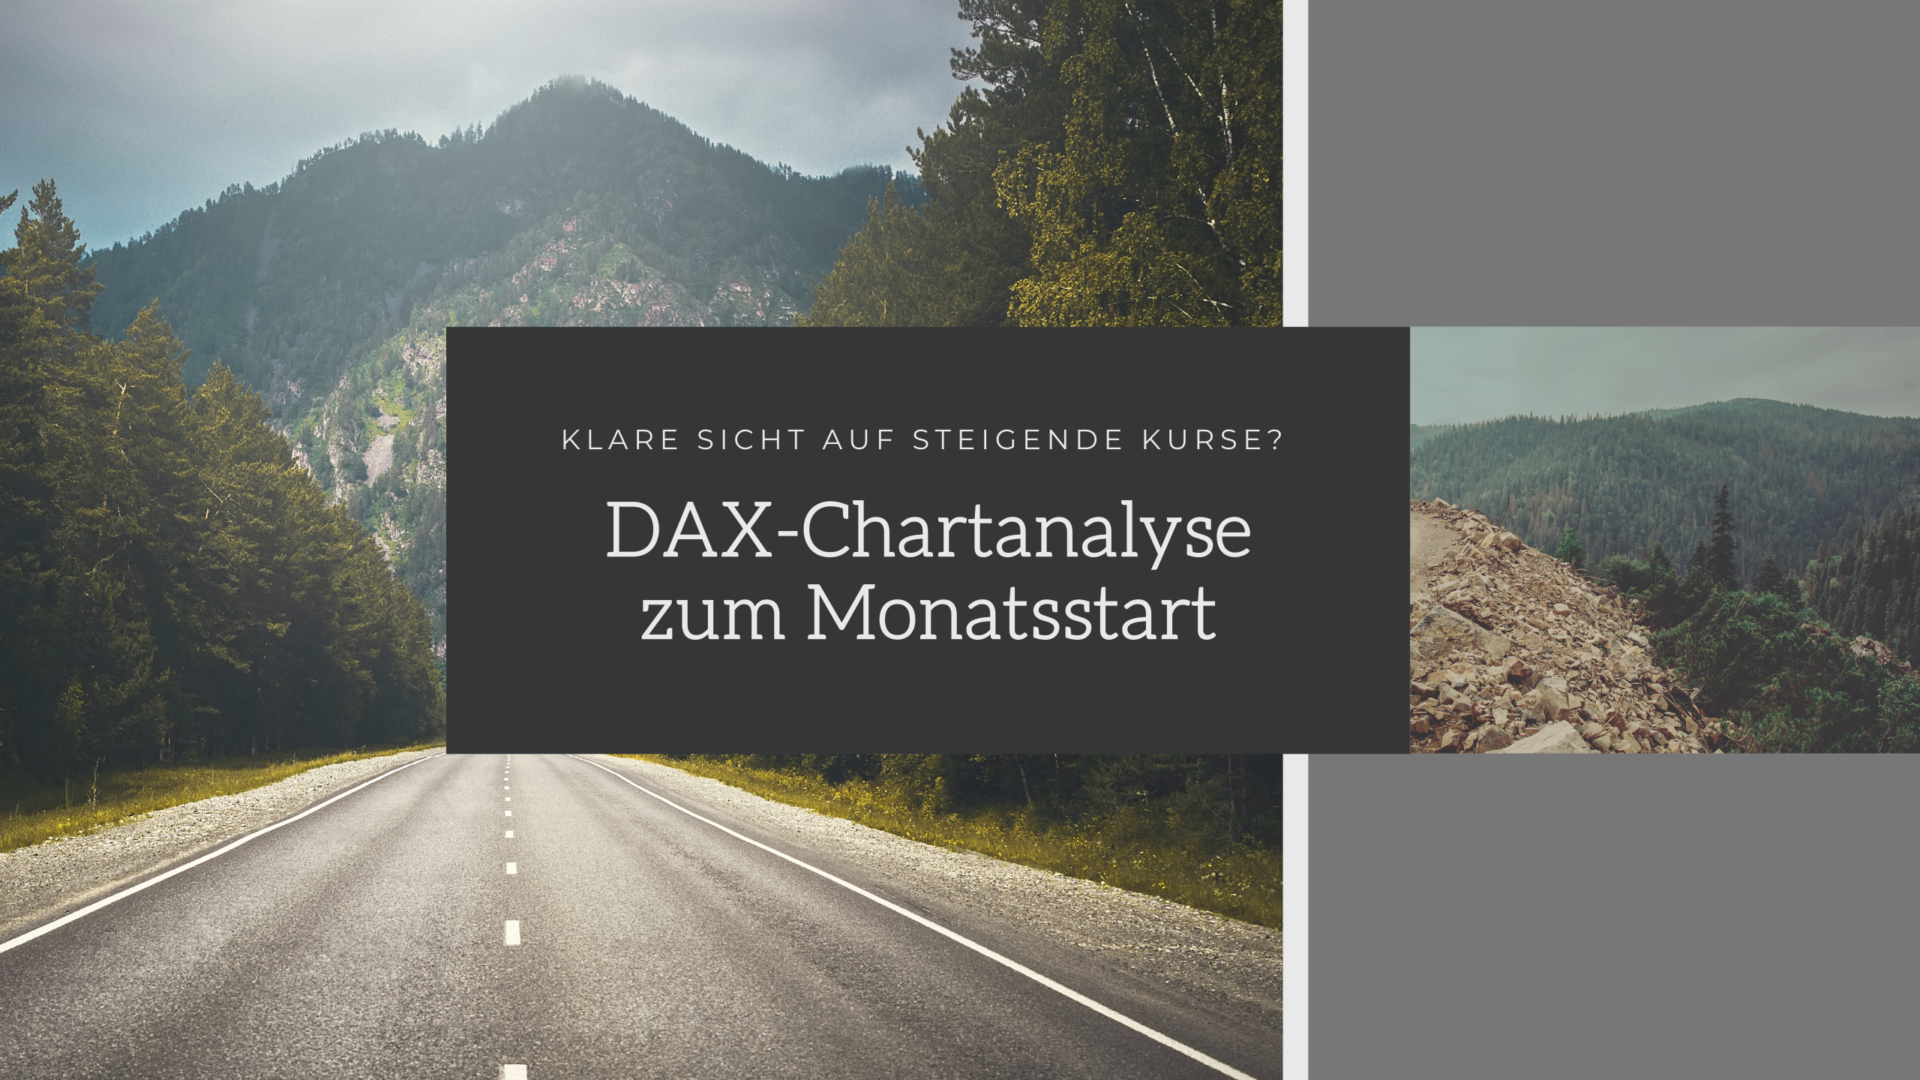 DAX-Chartanalyse zum Monatsstart